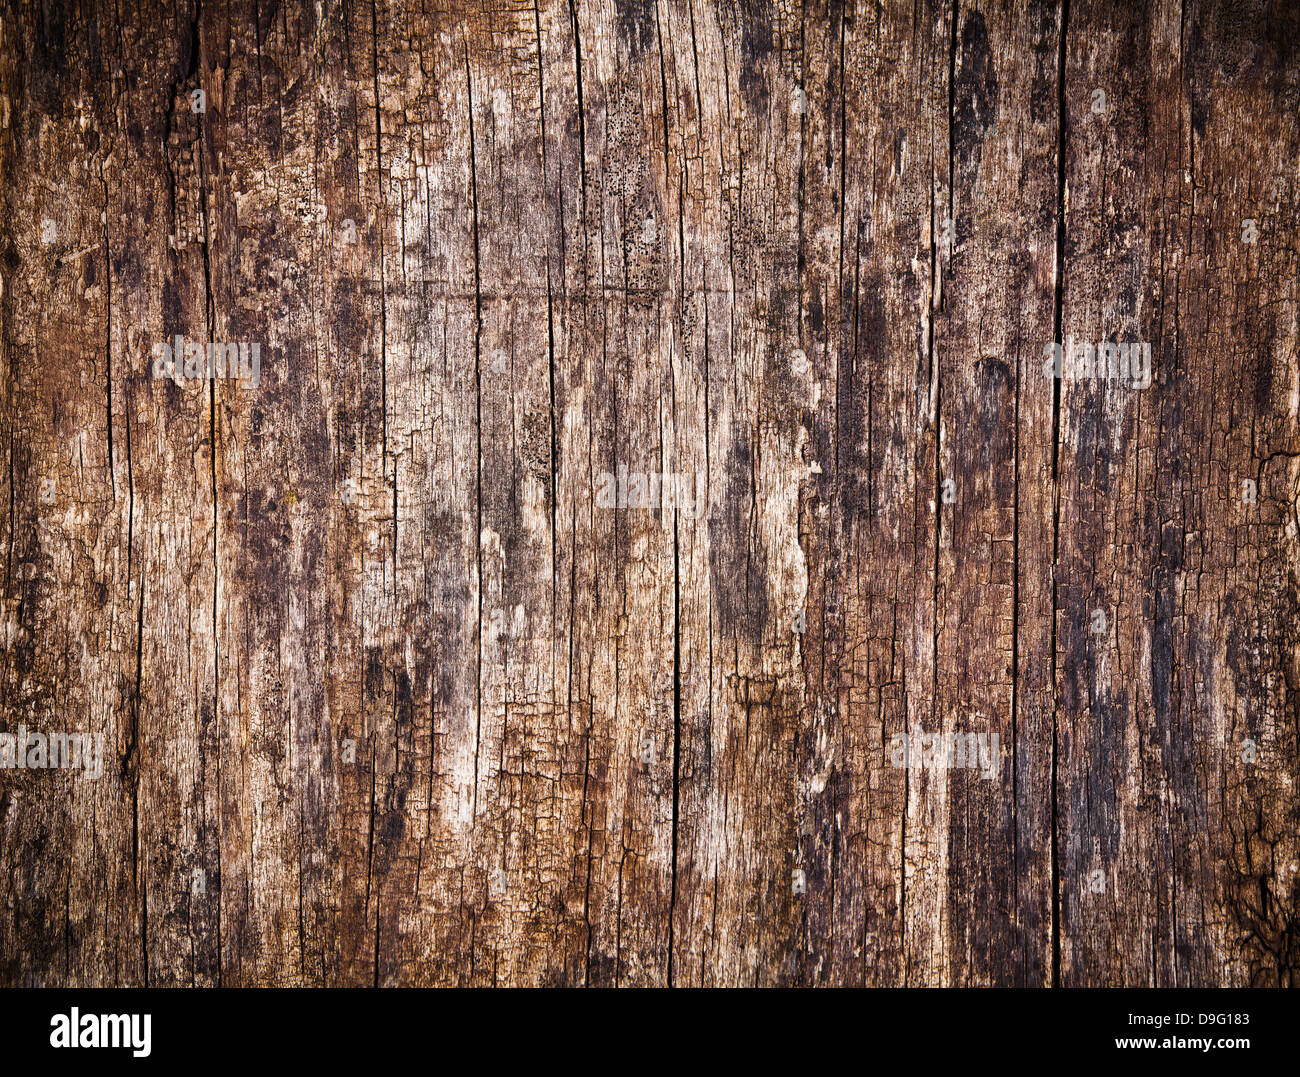 Alte, rissige Holz Hintergrund, hohe Auflösung Stockfoto